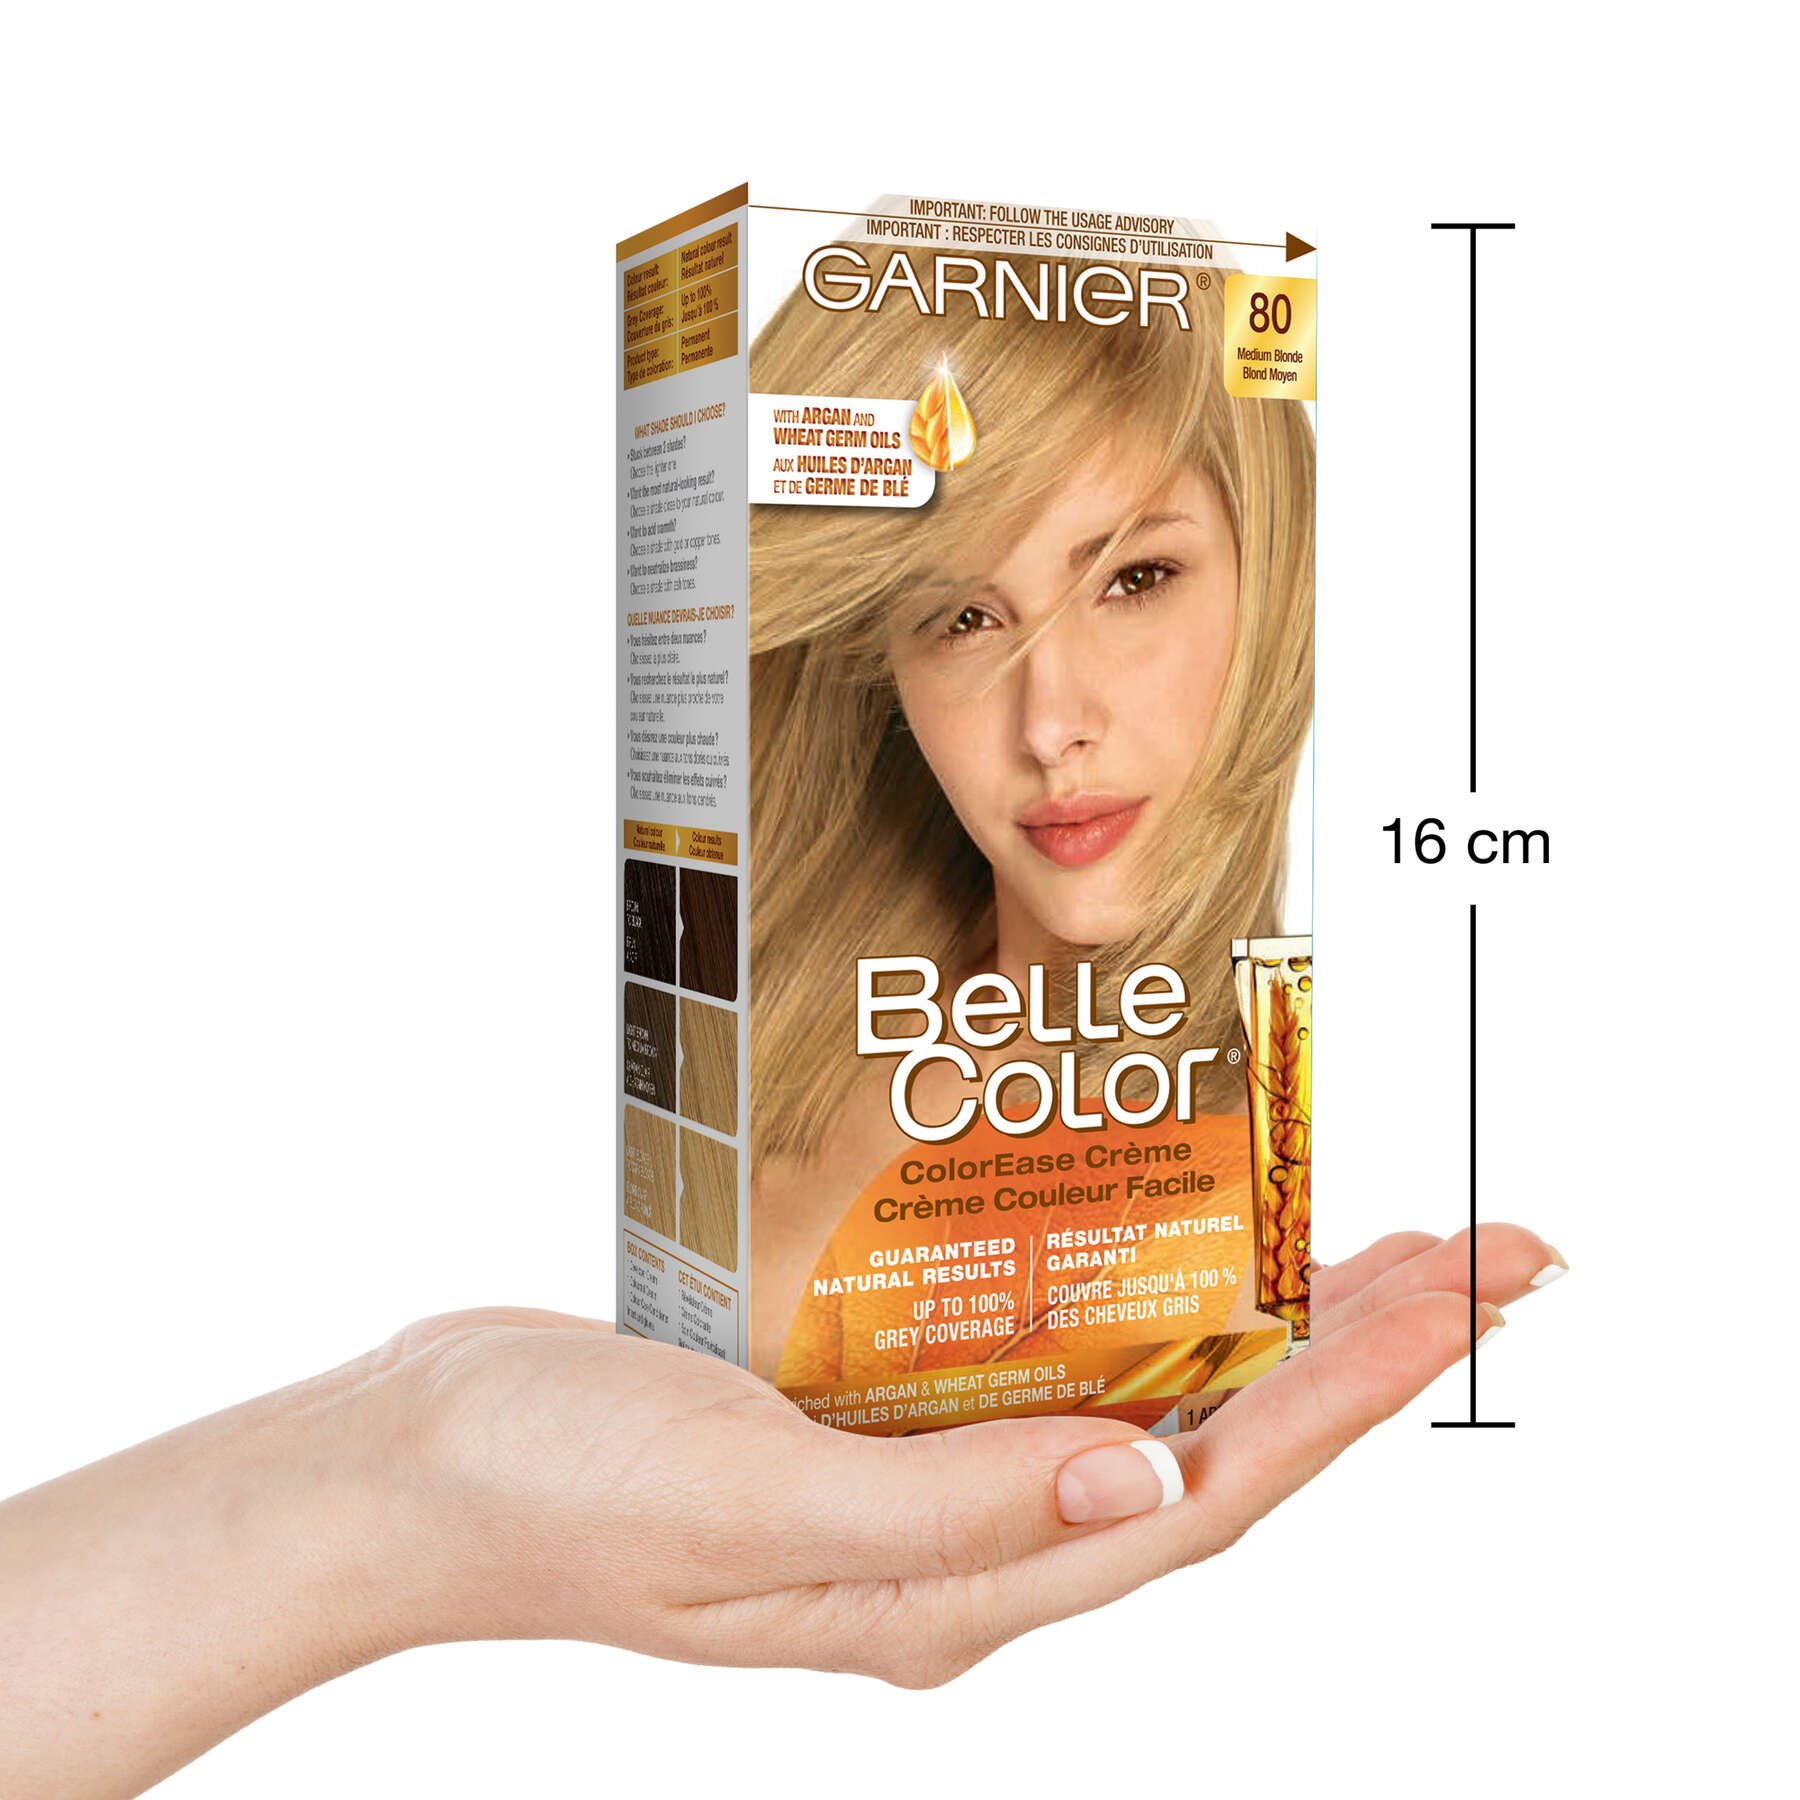 garnier hair dye belle color 80 medium blonde 70103160130 inhand